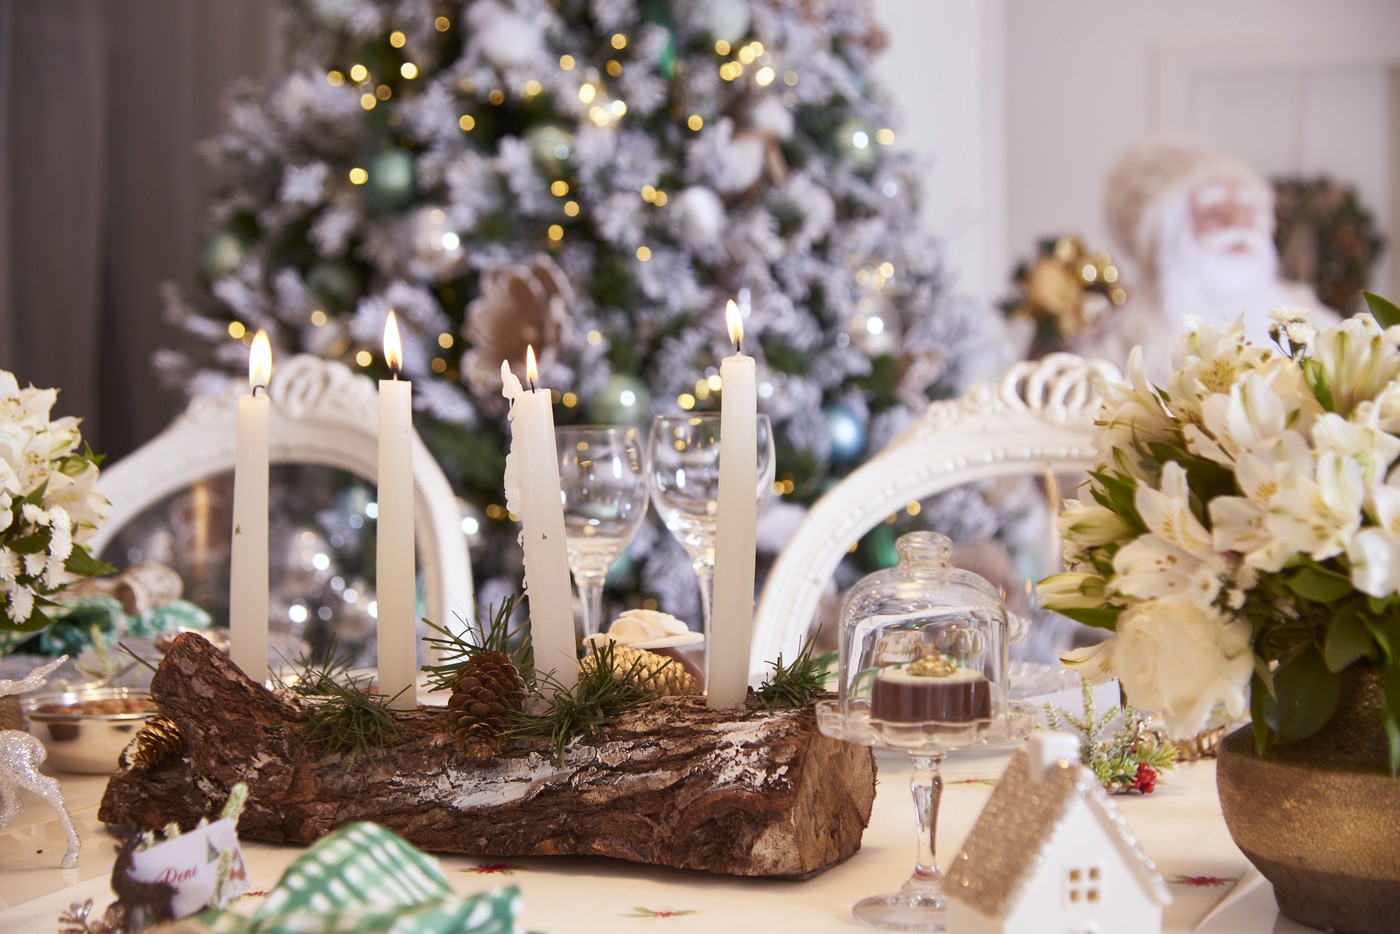 Ana Hickmann revela decoração de Natal com árvore gigante e enfeites brancos (Foto: André Loretti)